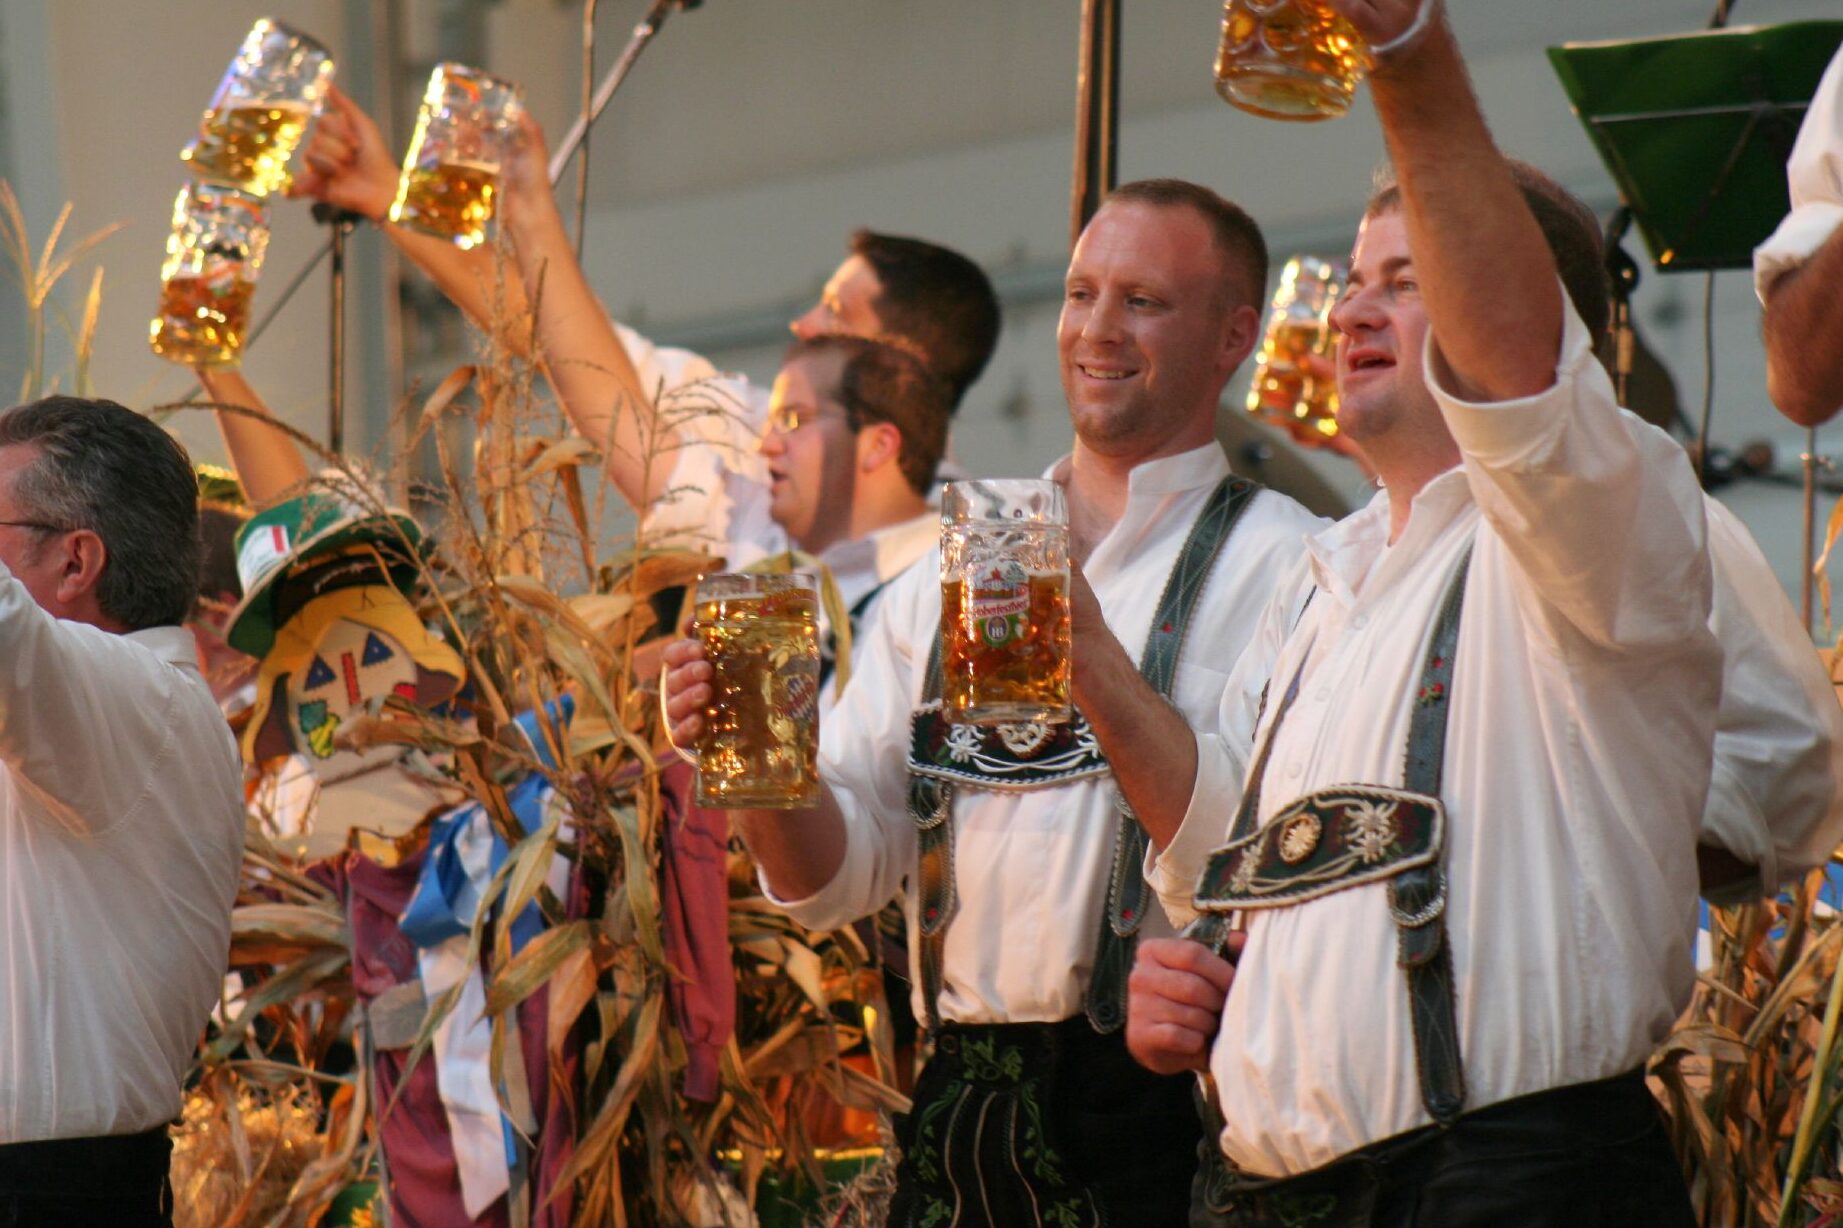 Festival de octubre en Múnich: tradición, cerveza y diversión.